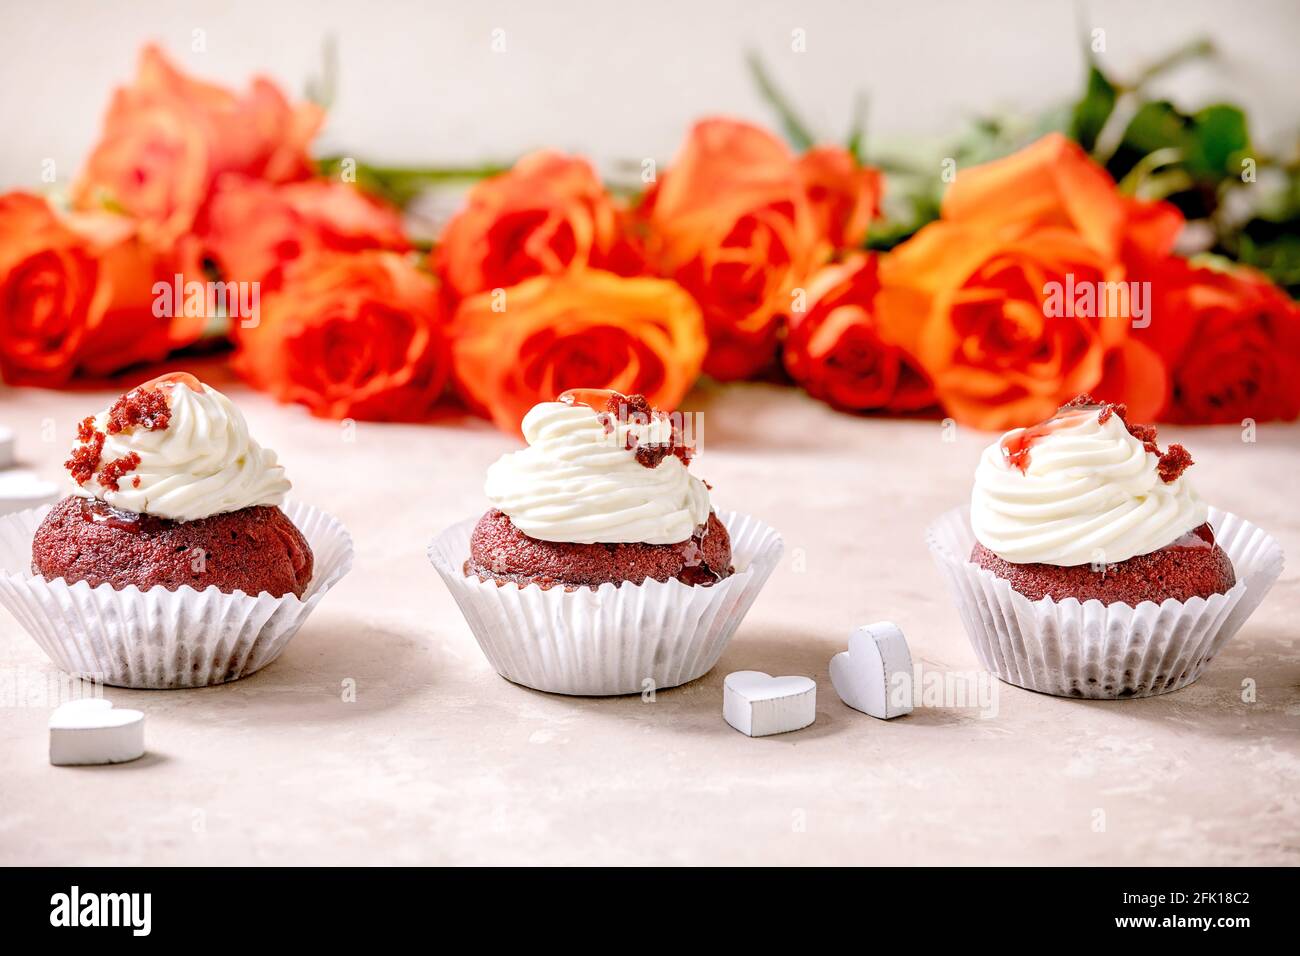 Petits gâteaux faits maison en velours rouge avec crème fouettée en rangée, serviette blanche avec ruban, fleurs roses, coeurs en bois sur fond de texture rose. Saint-Valentin Banque D'Images